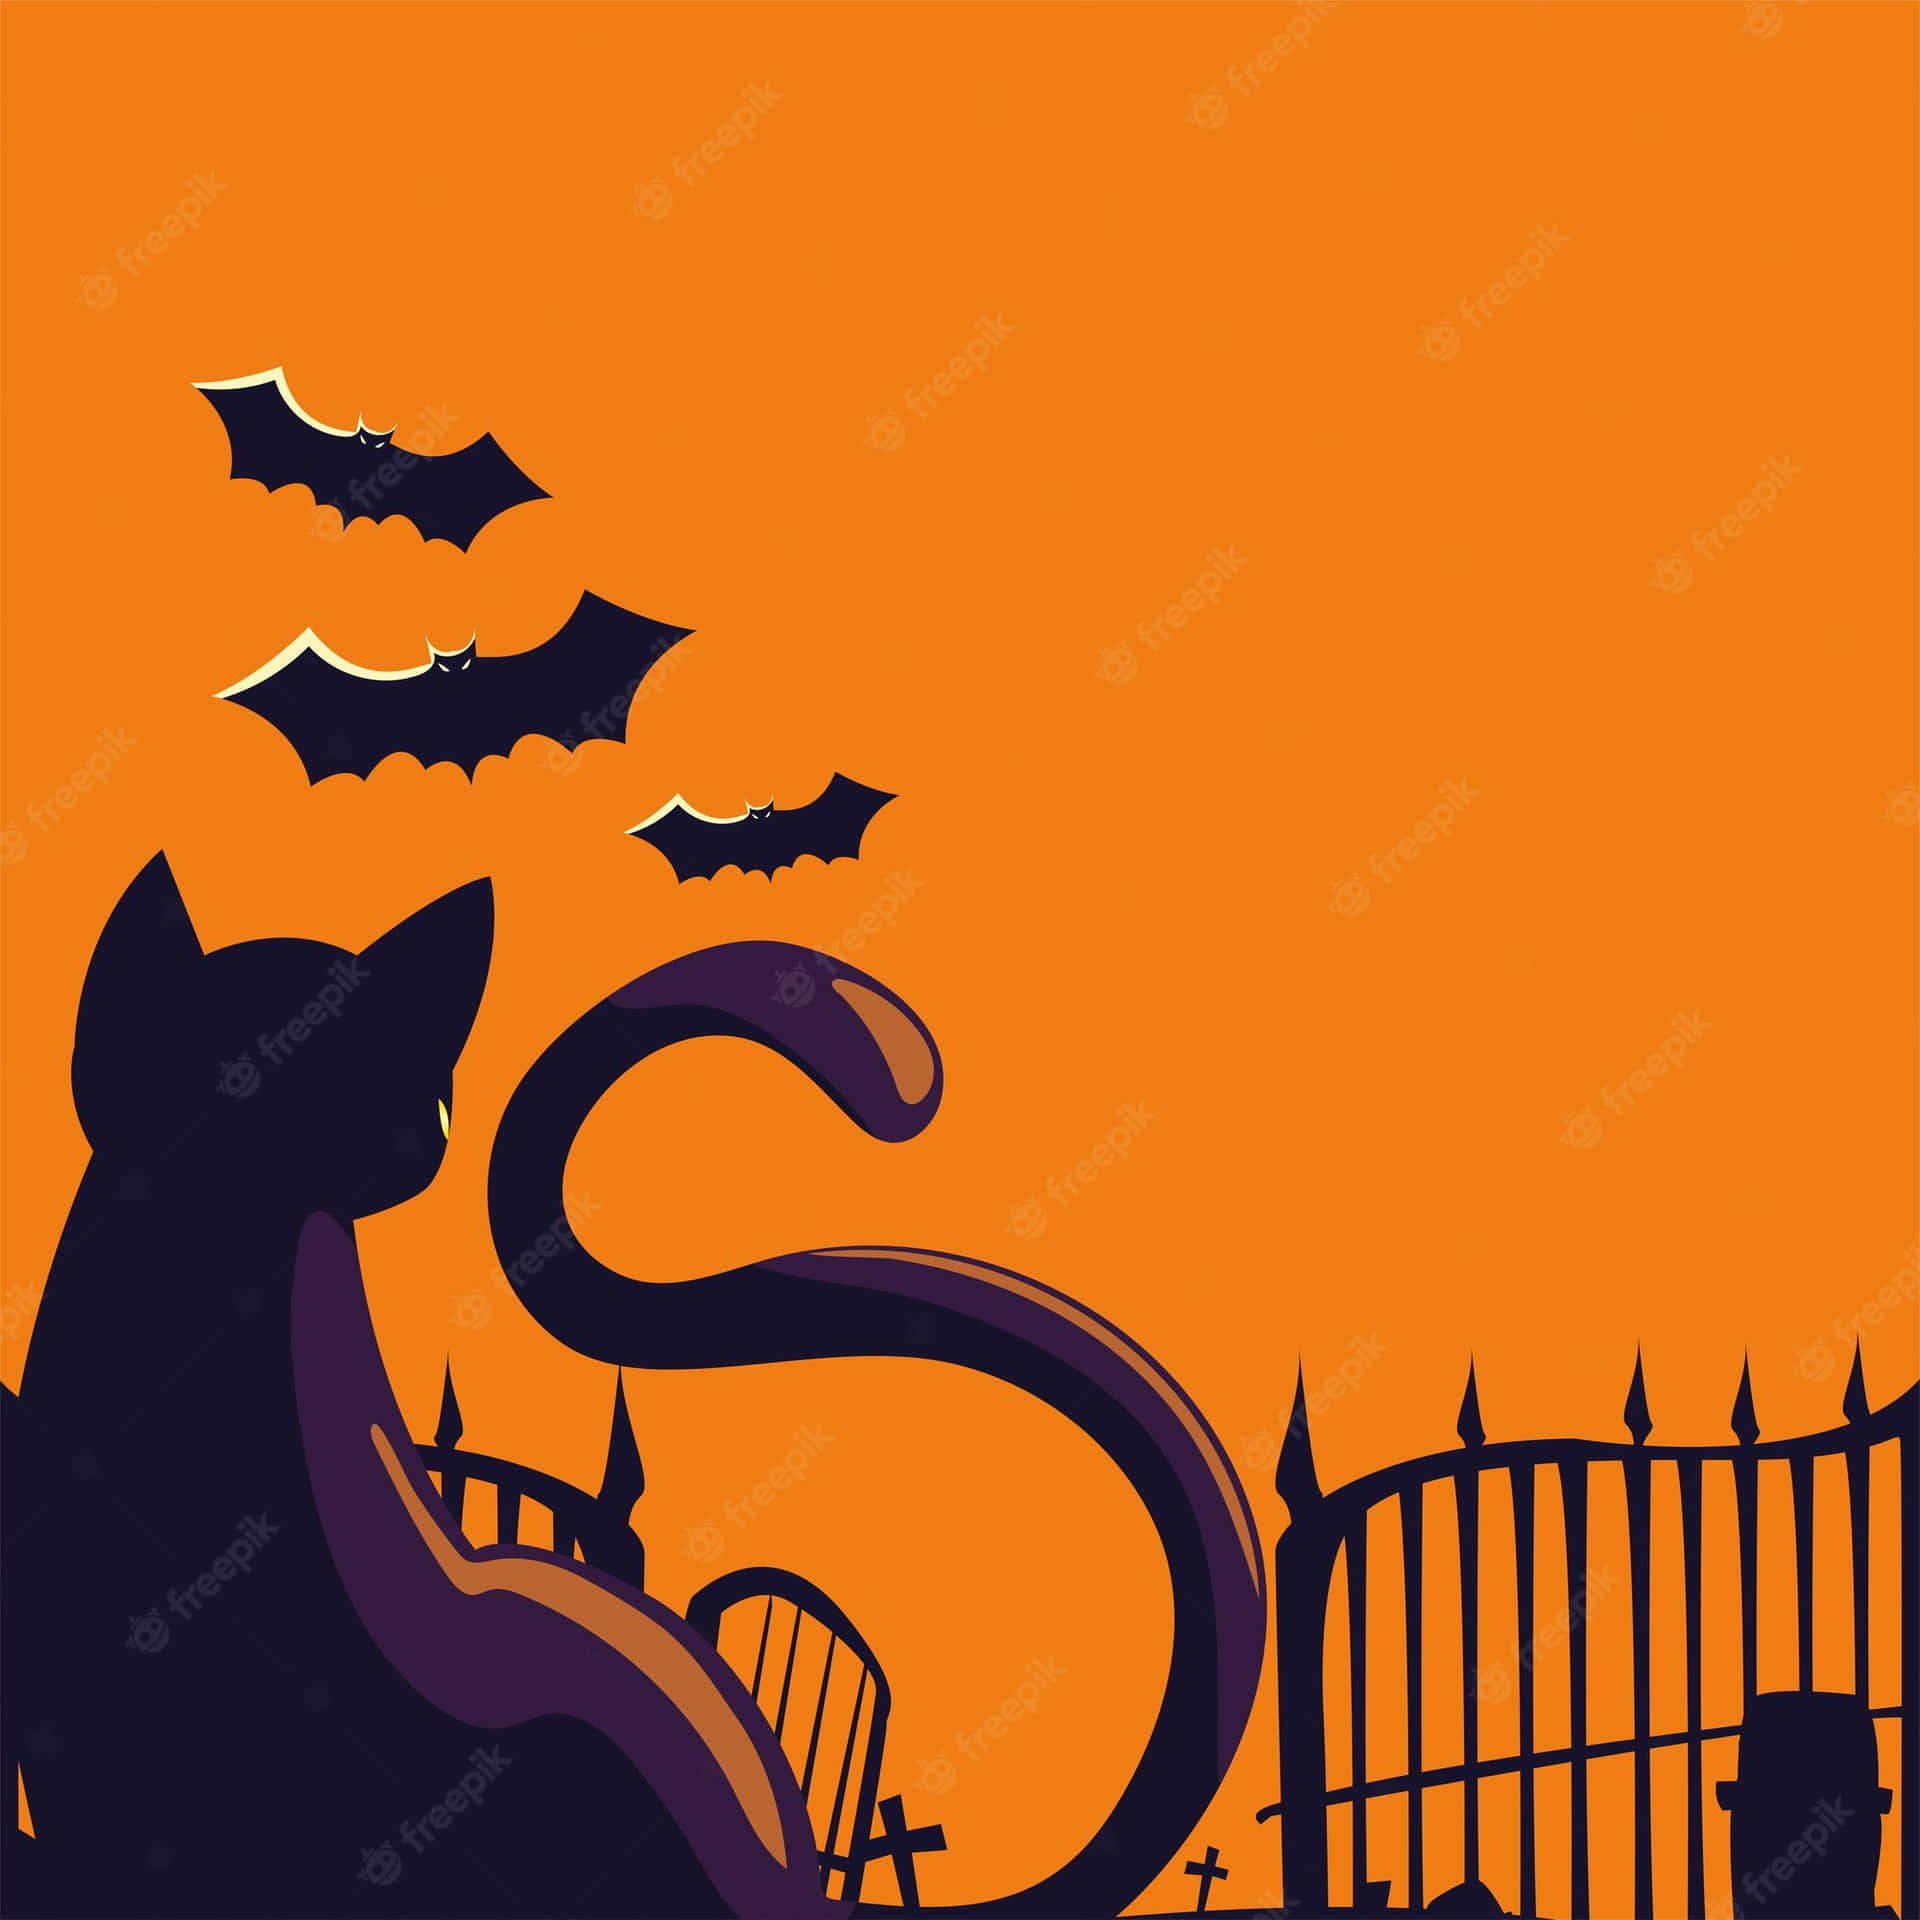 Cartoneanimato Di Un Gatto Spaventoso Che Guarda I Pipistrelli. Sfondo